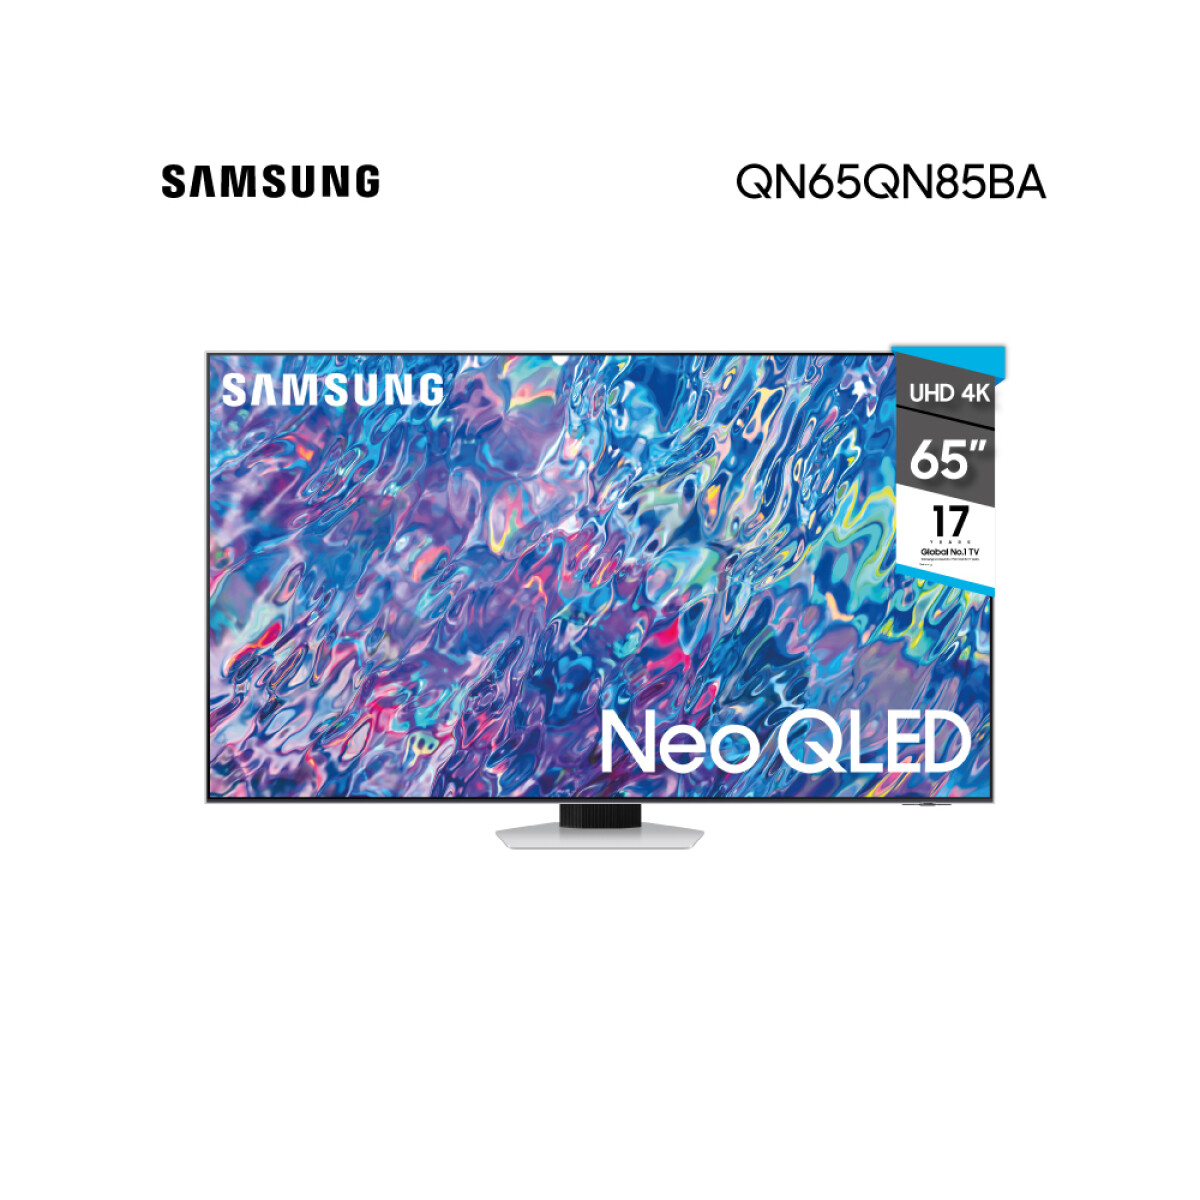 Smart TV Samsung 65" Neo QLED UHD 4K QN65QN85BA 